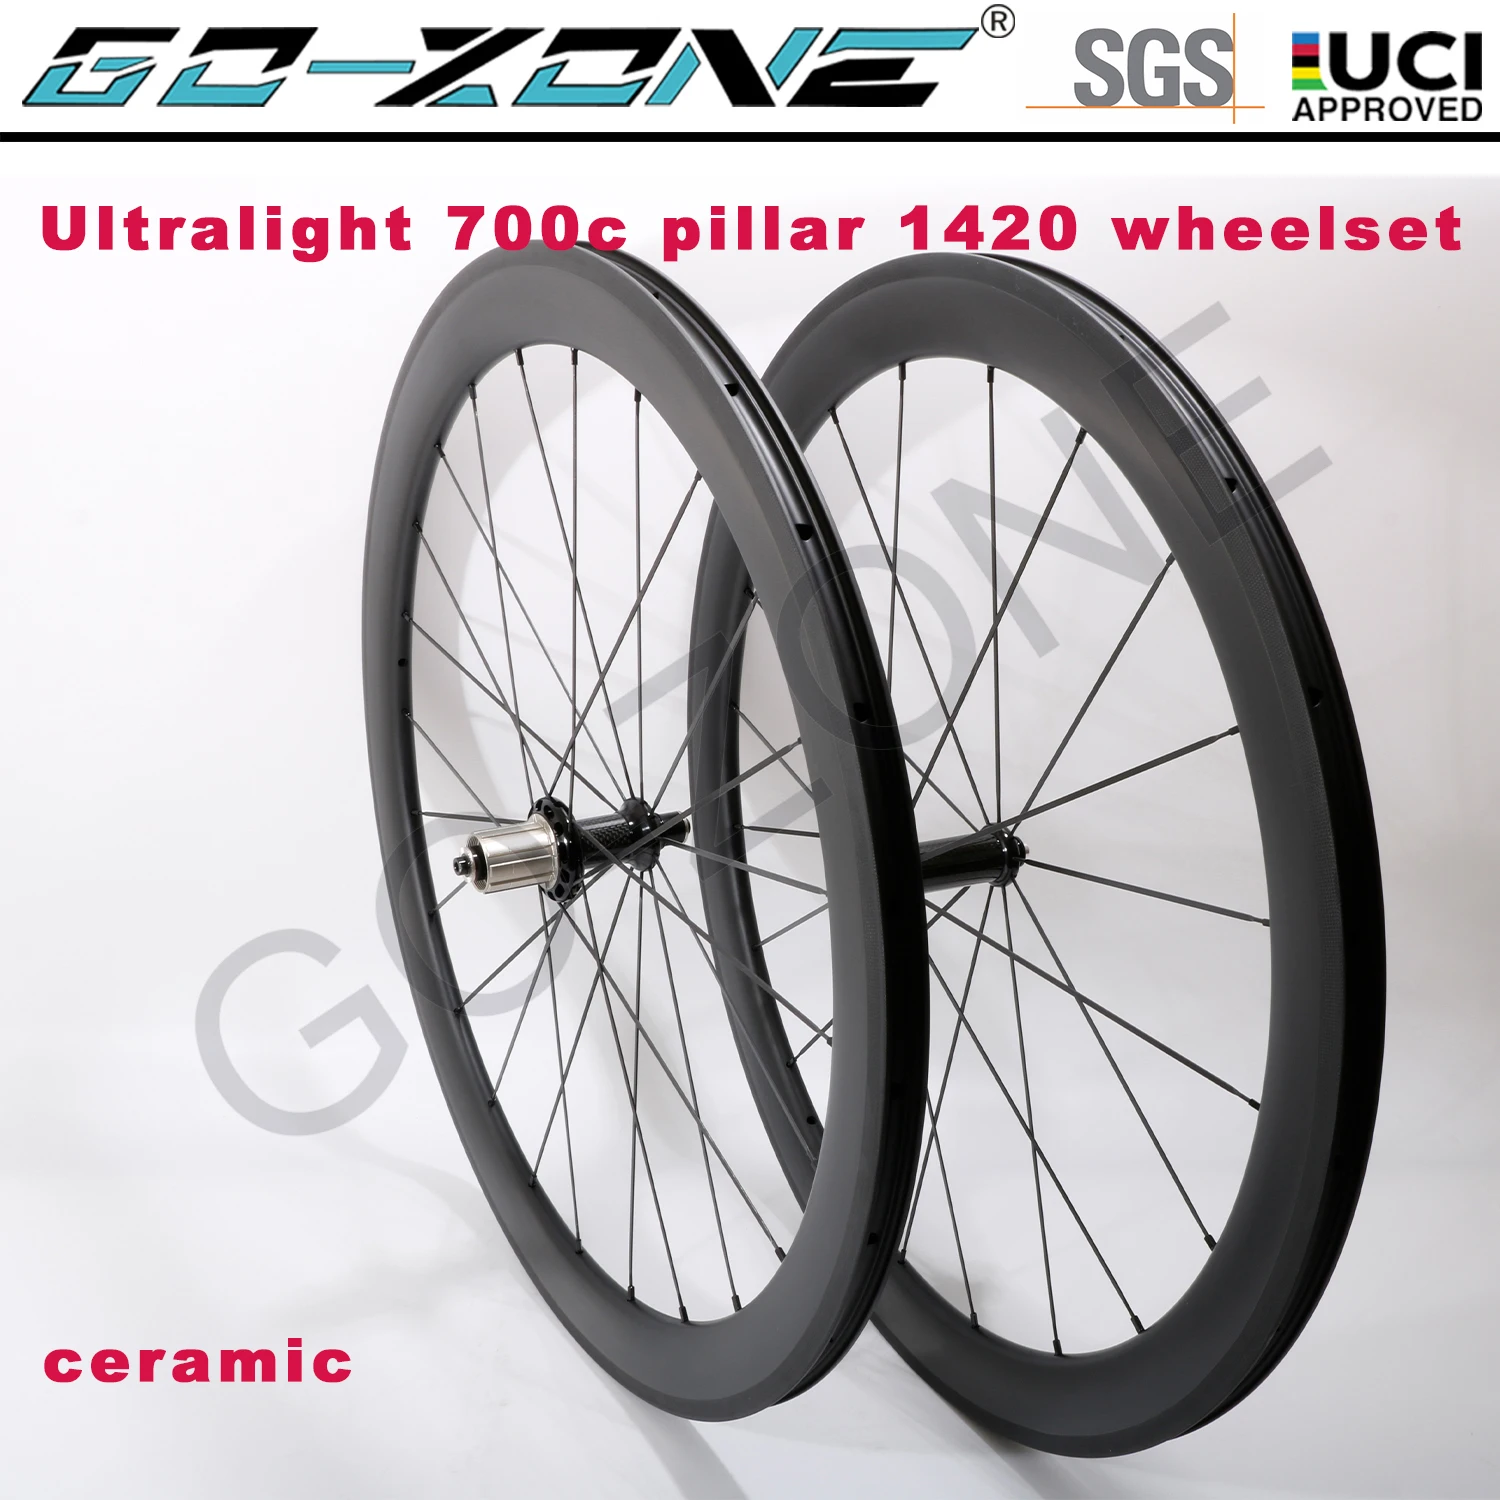 

Ultra Light Ceramic 25mm Width 700c Carbon Wheelset V Brake Powerway R36 Pillar 1420 Clincher Tubeless Road Rim Brake Wheels